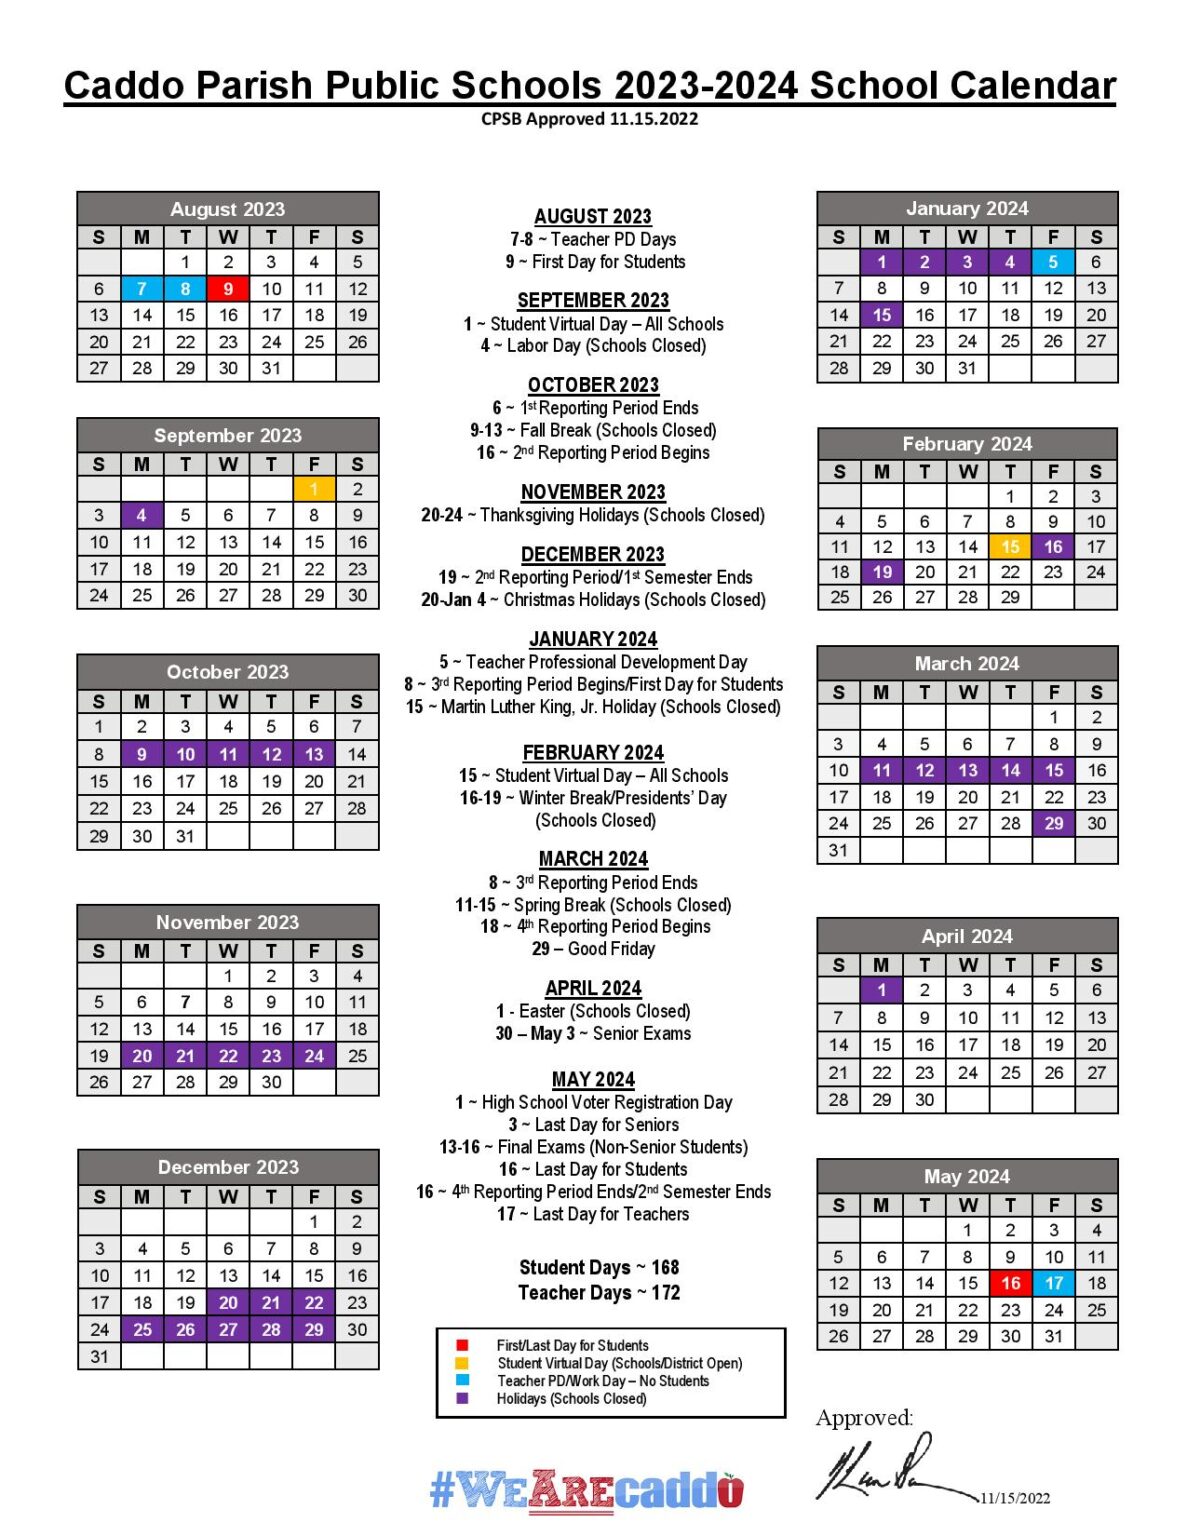 Caddo Parish Public Schools Calendar Page 001 1187x1536 